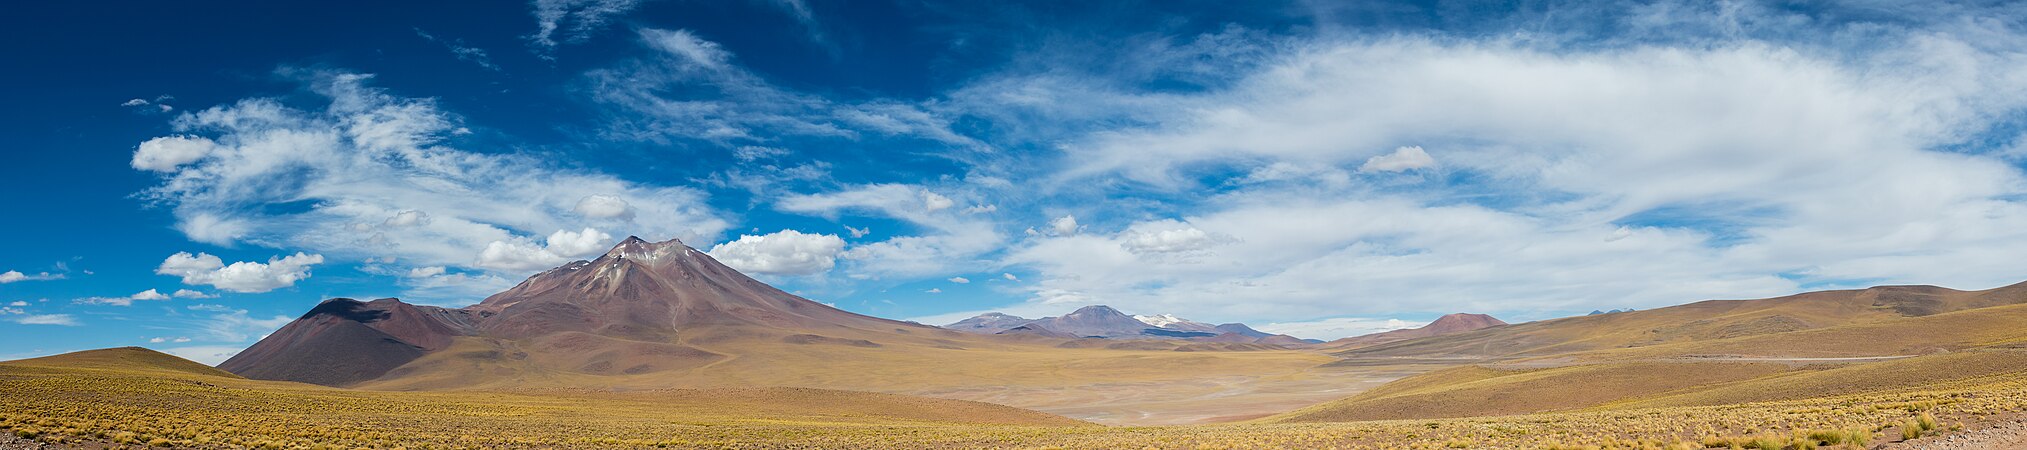 图为智利北部安地斯山脉的火山景观，左起为米尼克斯山（5,910米）、图亚赫托山（5,460米）、穆尔乔塔山（4,567米）和印加瓦西山脉 （5,704米）。